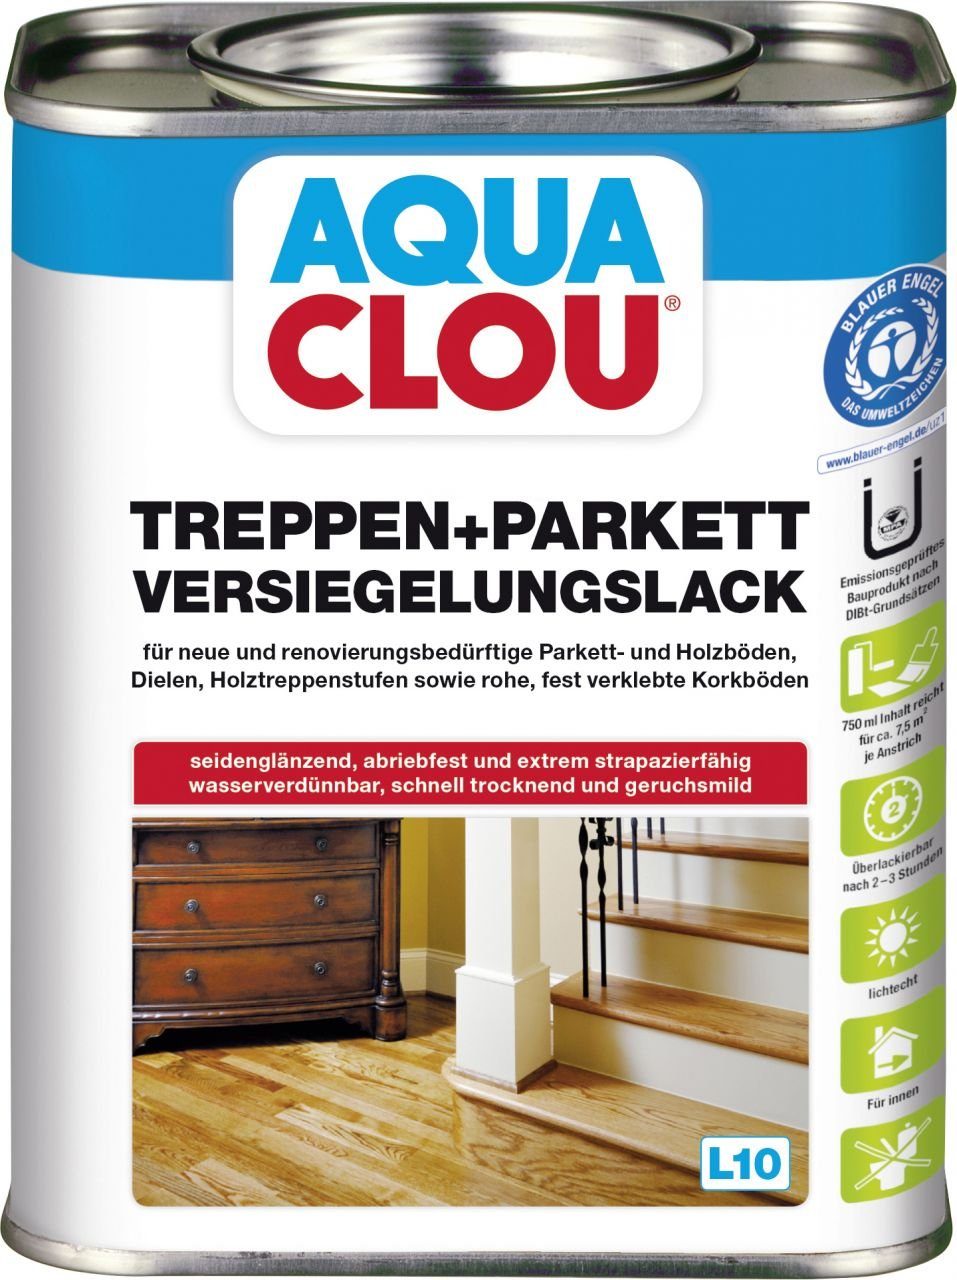 Aqua Clou Treppen- und Parkettlack Aqua Clou Treppen-Parkettlack L10 750 ml